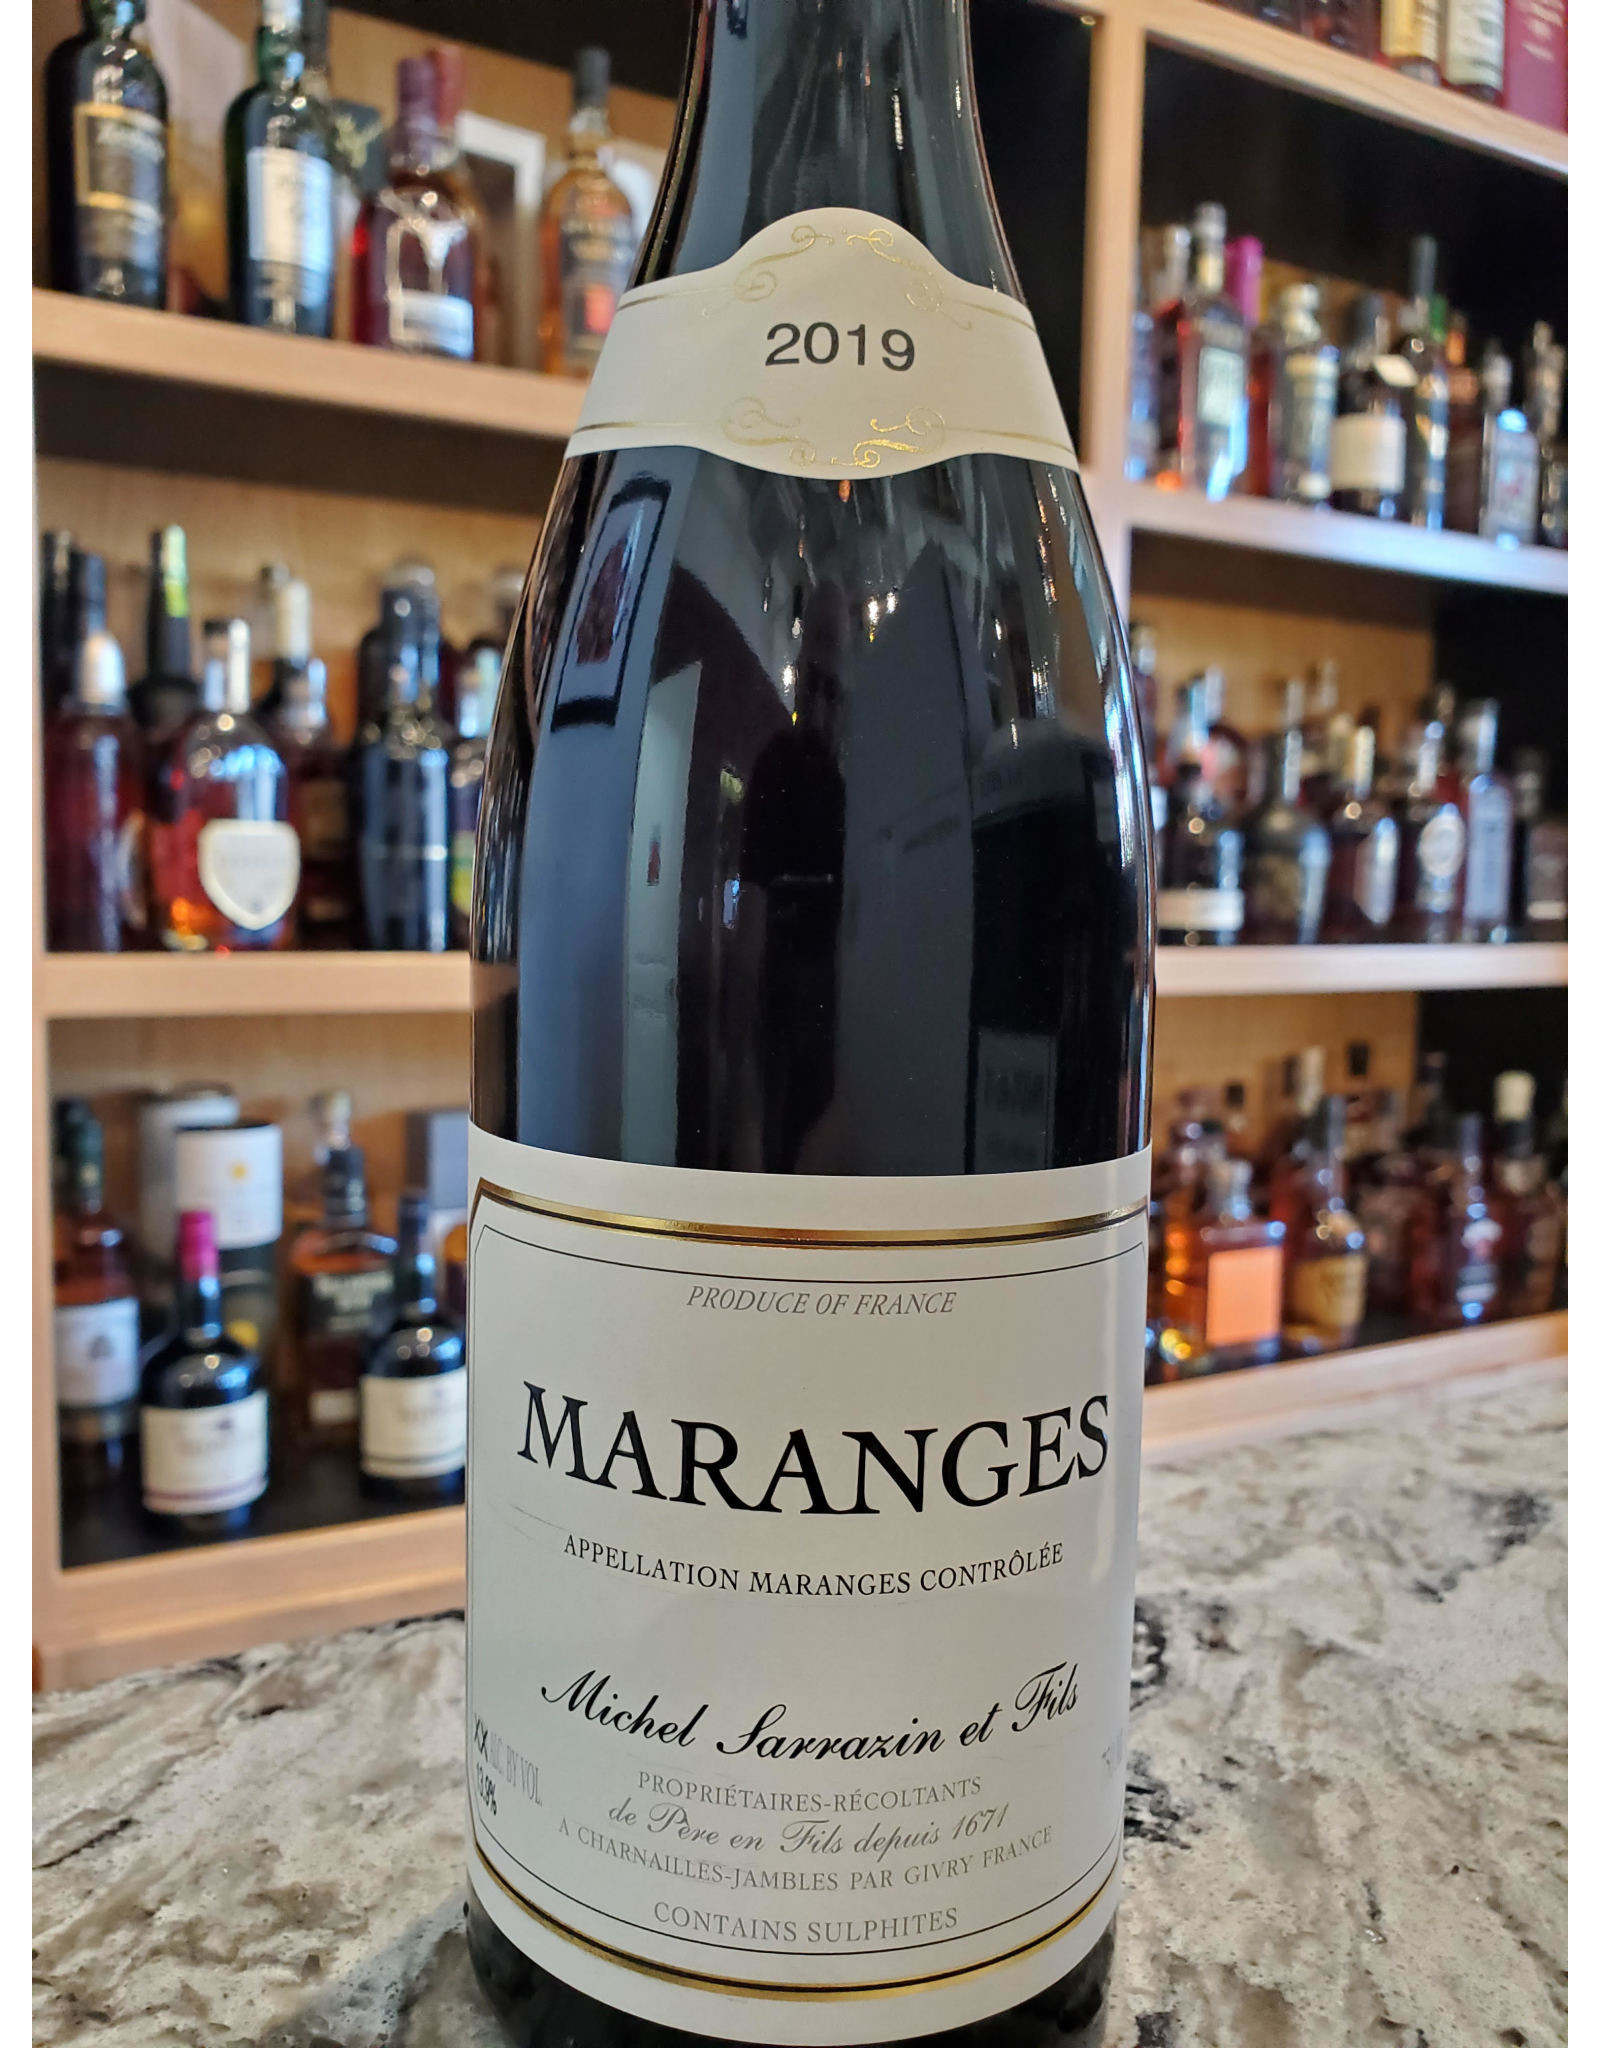 Sarrazin et Fils, Maranges, (red Burgundy) 2019